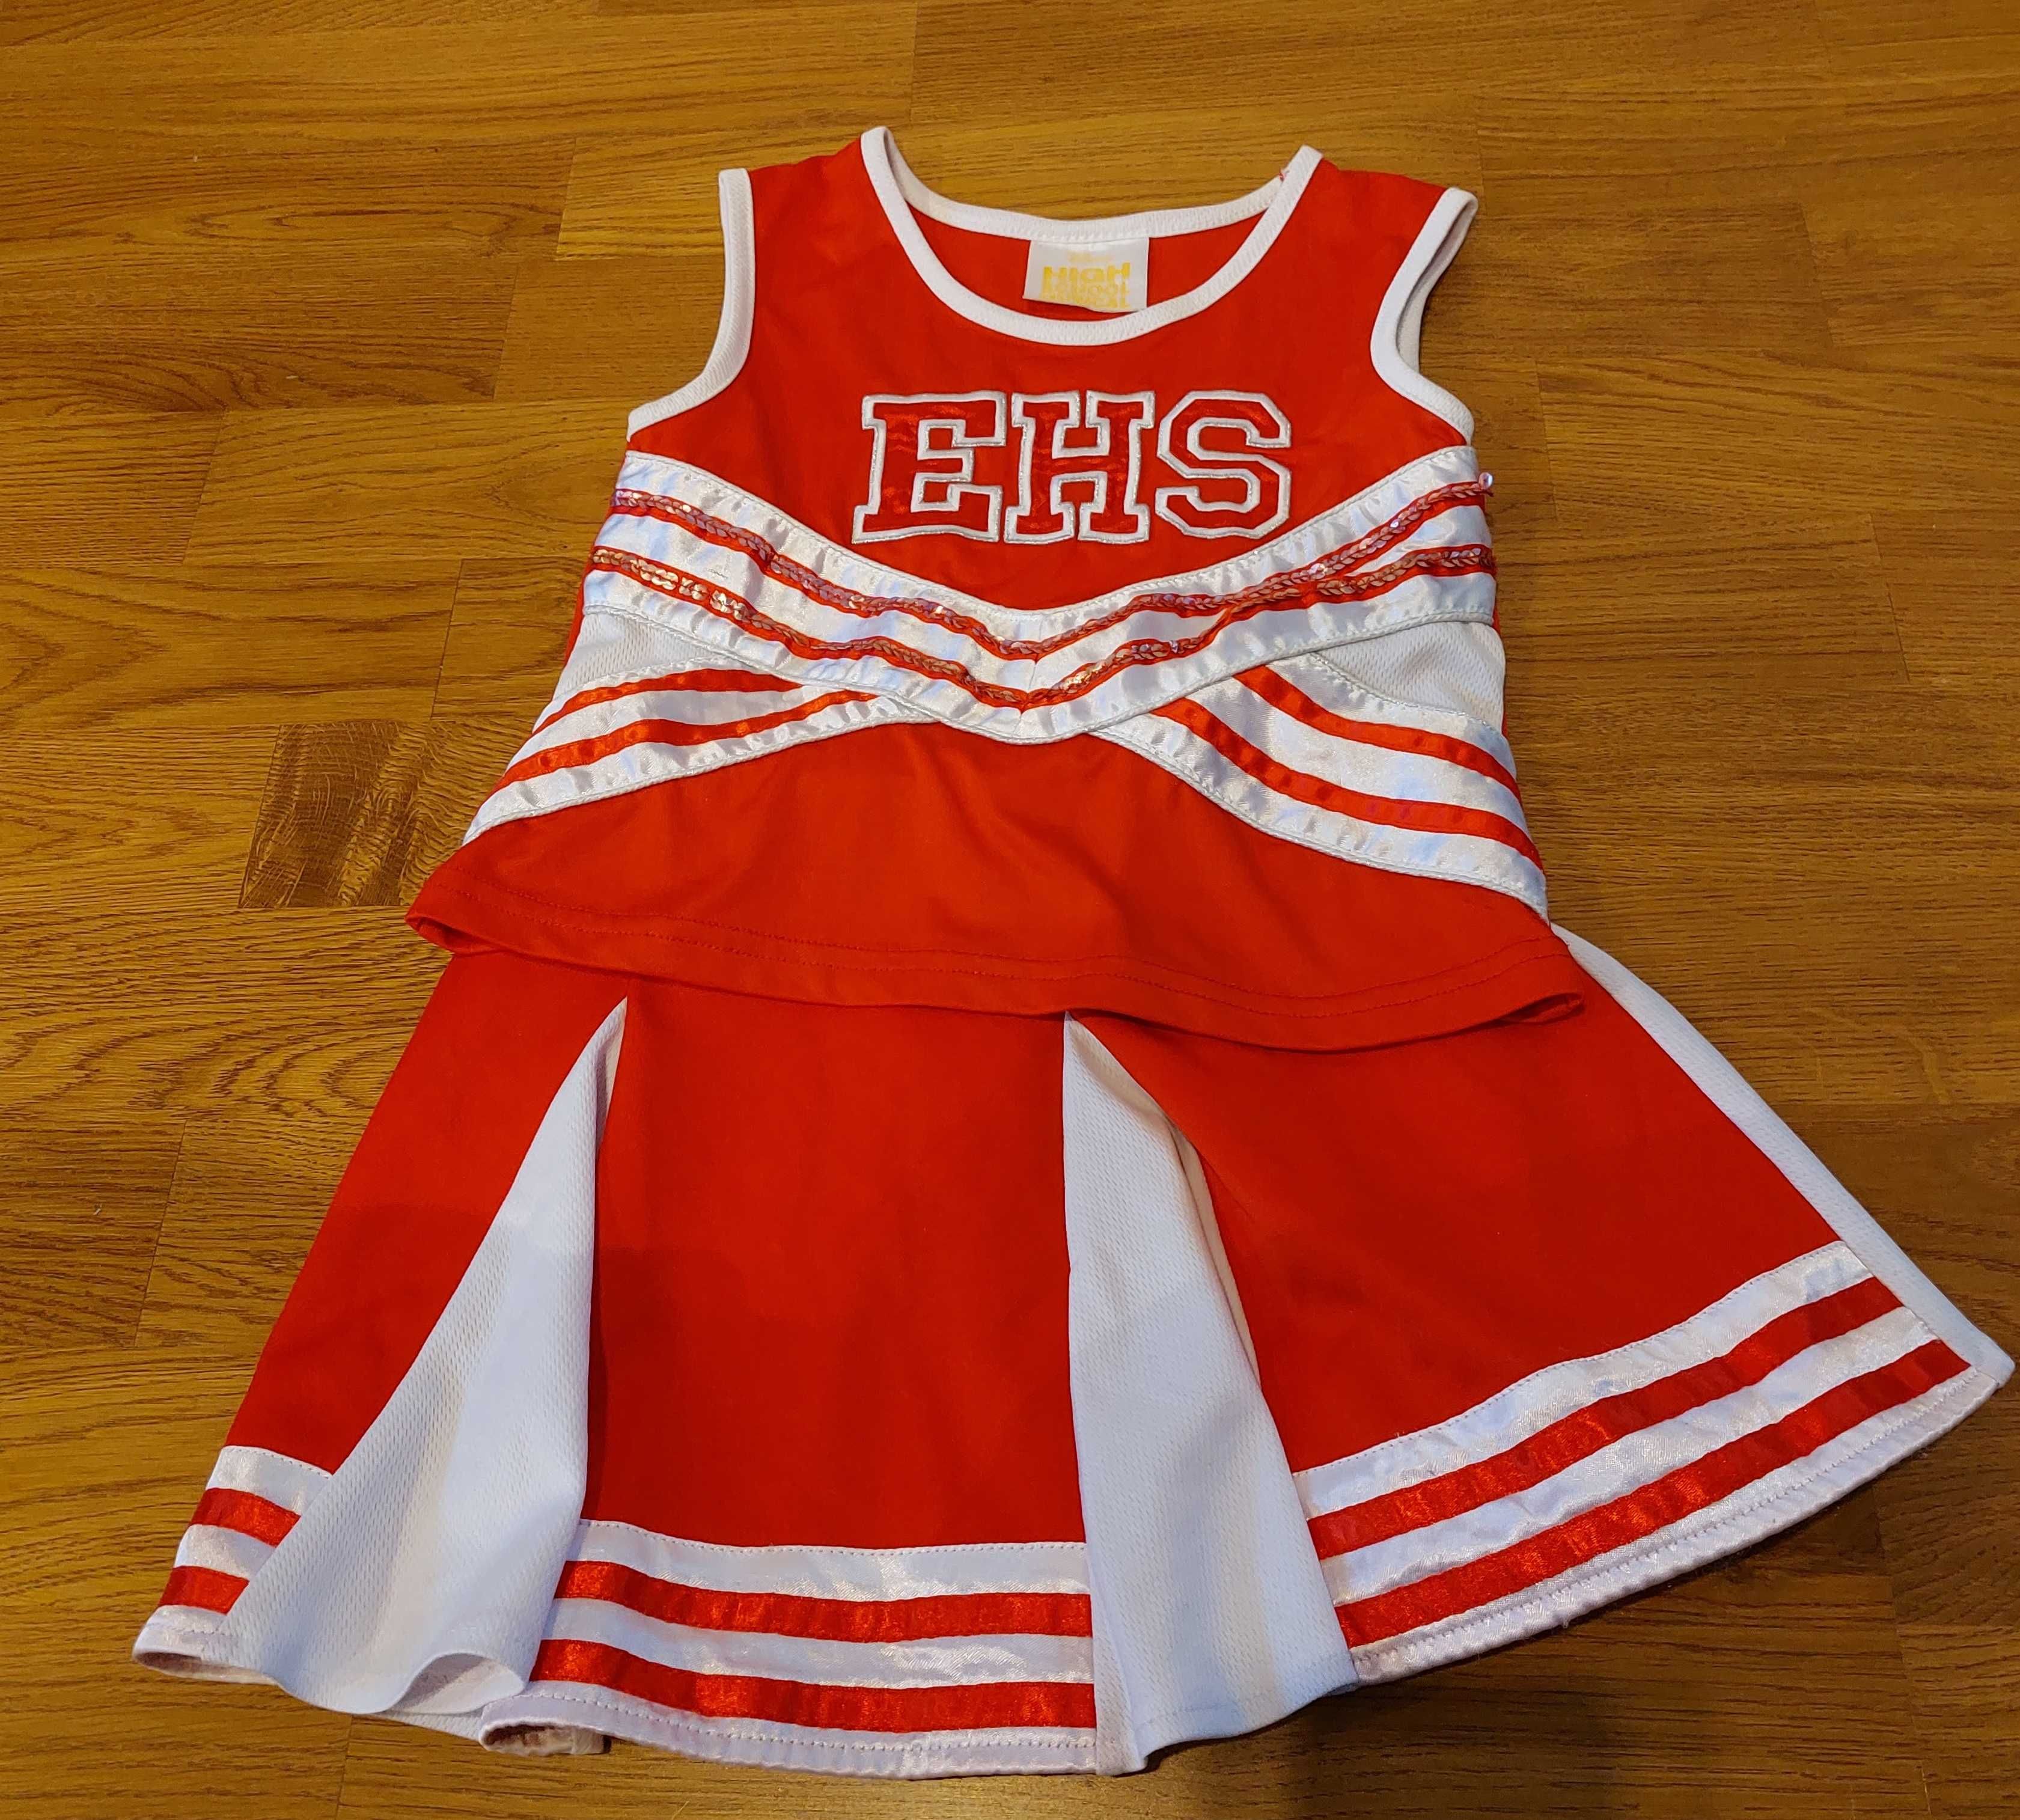 Strój Kostium Przebranie cheerleaderki + pompony 116 Disney EHS